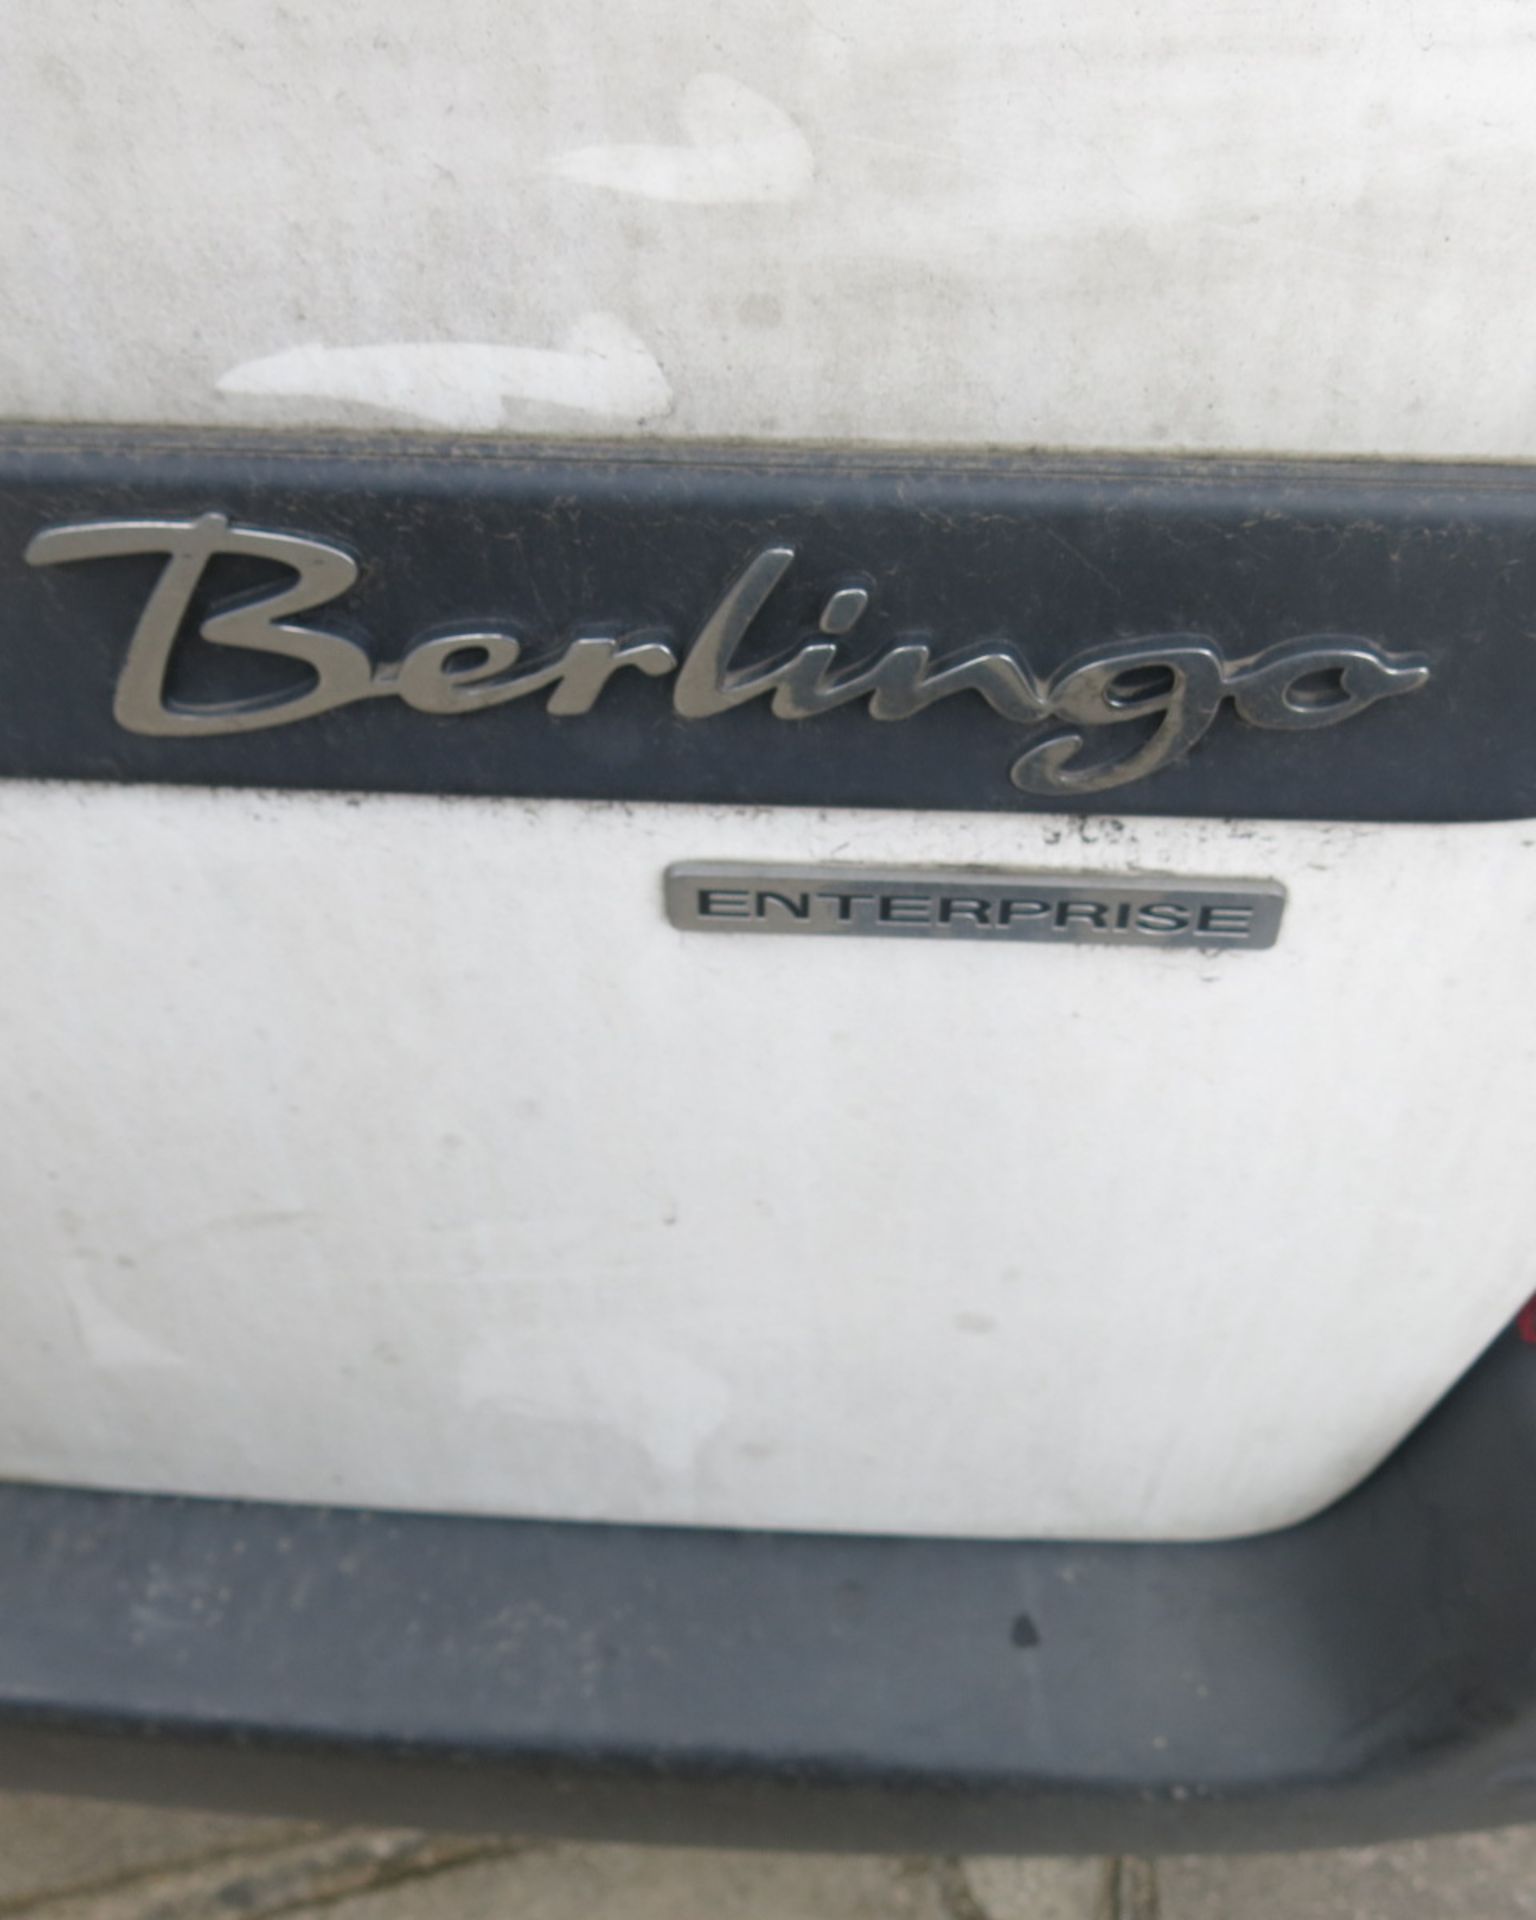 GF57 KLS: Citreon Berlingo 600 HDi Enterprise Car Derived Van. - Image 8 of 17